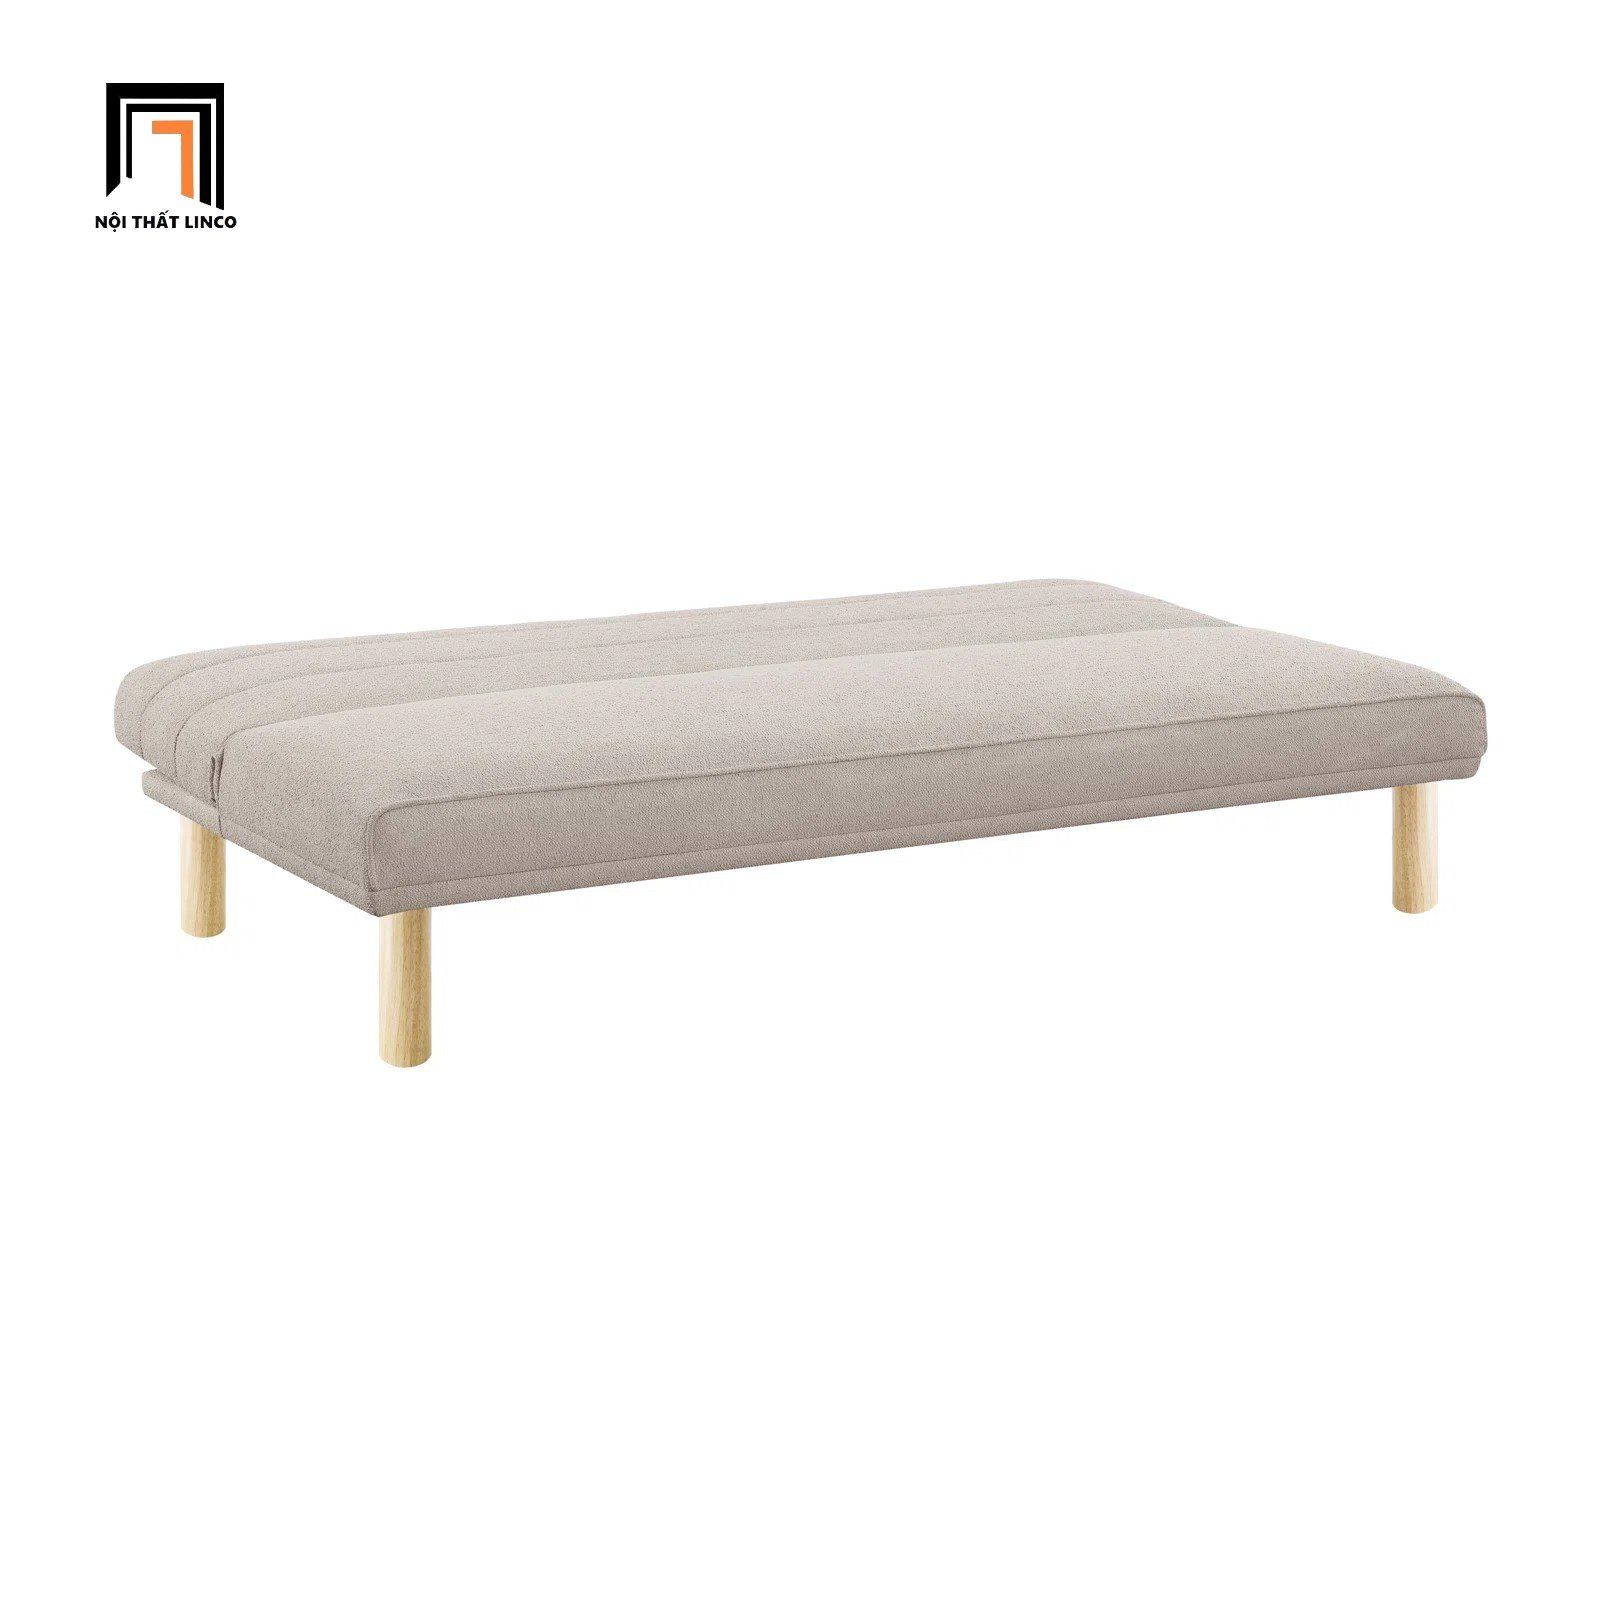  Ghế sofa giường nhỏ gọn 1m7 GB54 Calabas màu trắng kem 